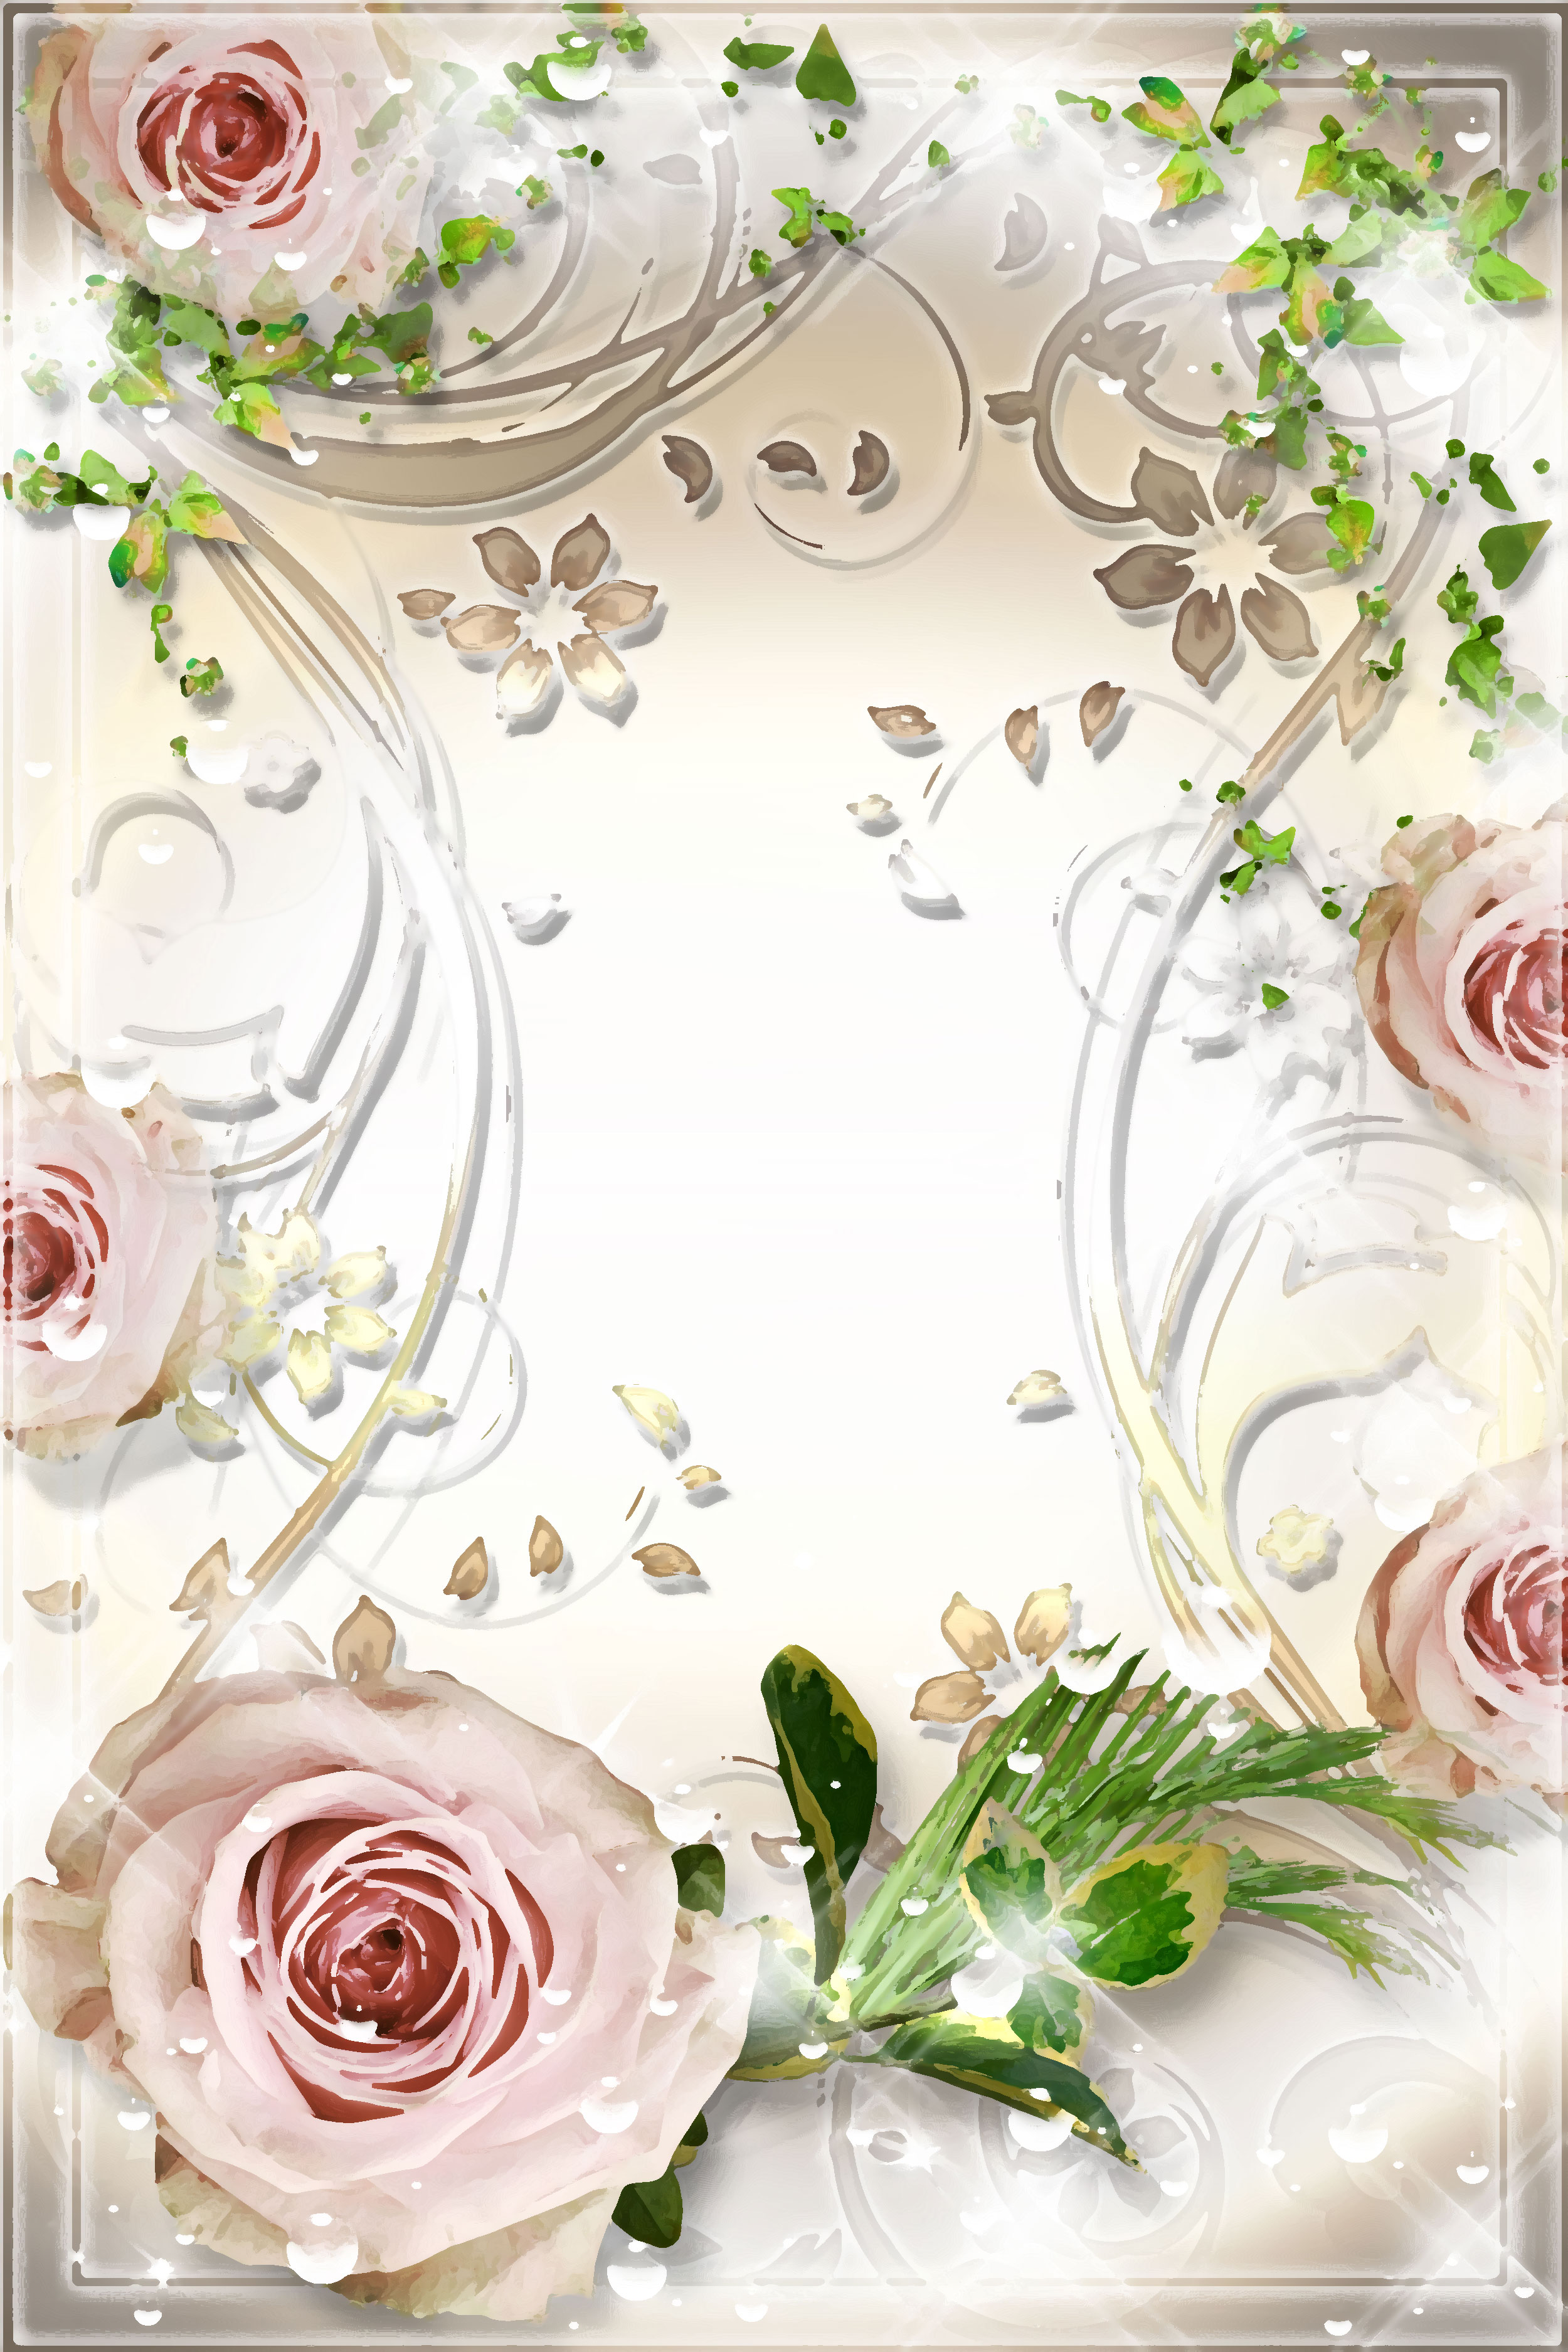 ピンクの花のイラスト フリー素材 壁紙 背景no 598 白バラ 葉 エレガント